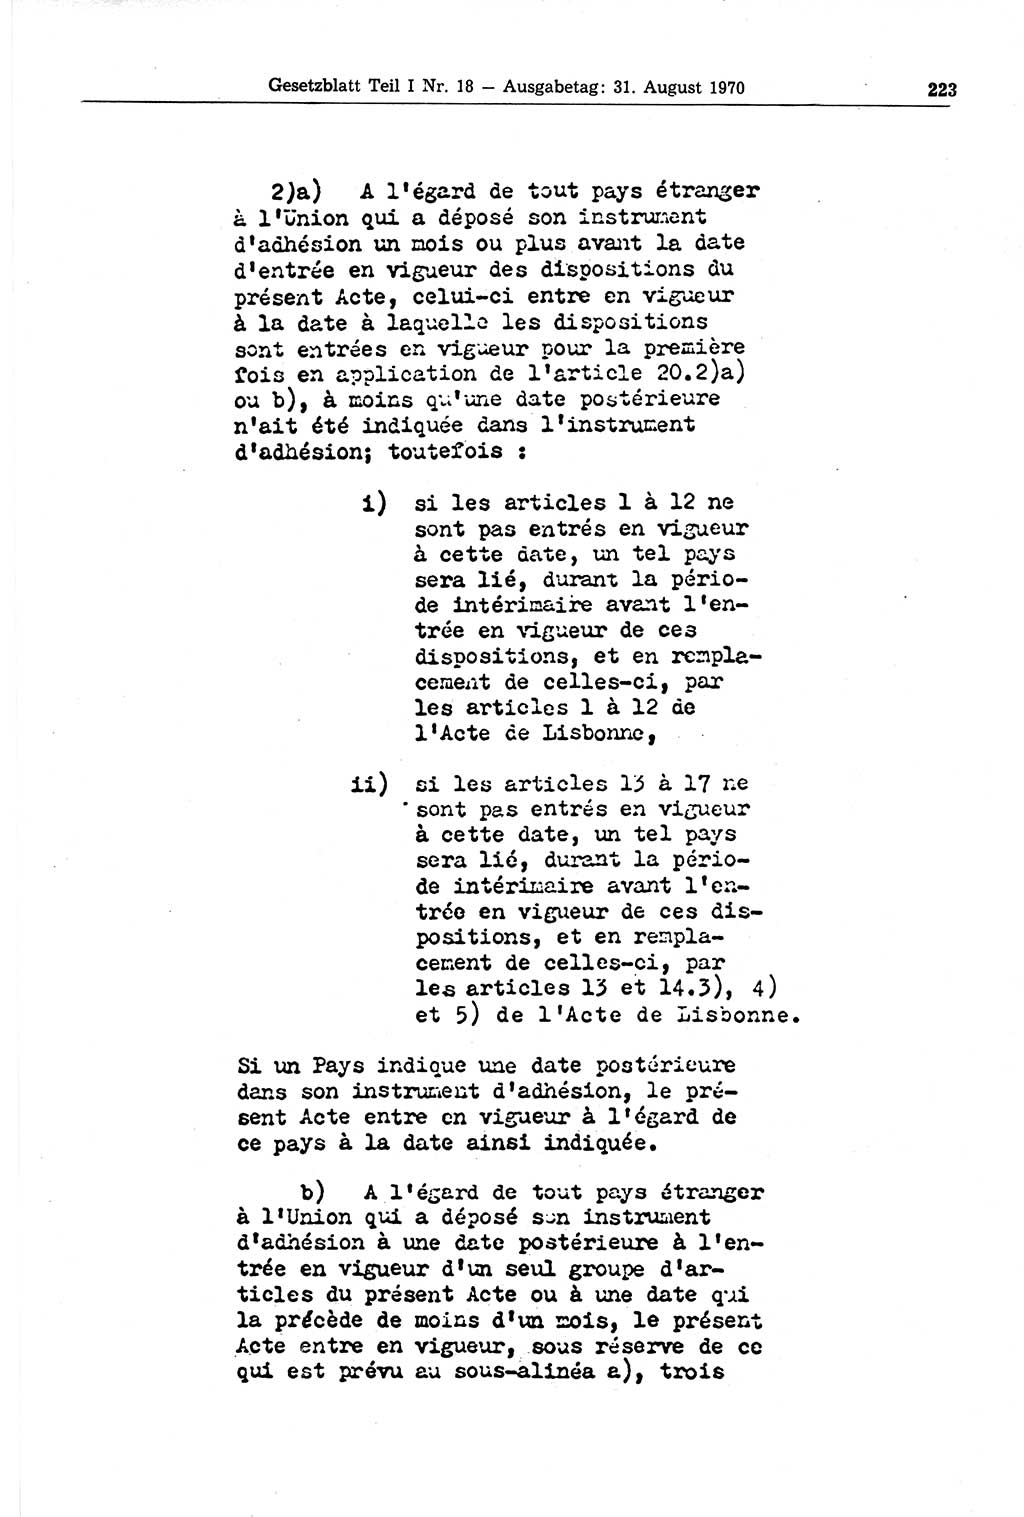 Gesetzblatt (GBl.) der Deutschen Demokratischen Republik (DDR) Teil Ⅰ 1970, Seite 223 (GBl. DDR Ⅰ 1970, S. 223)